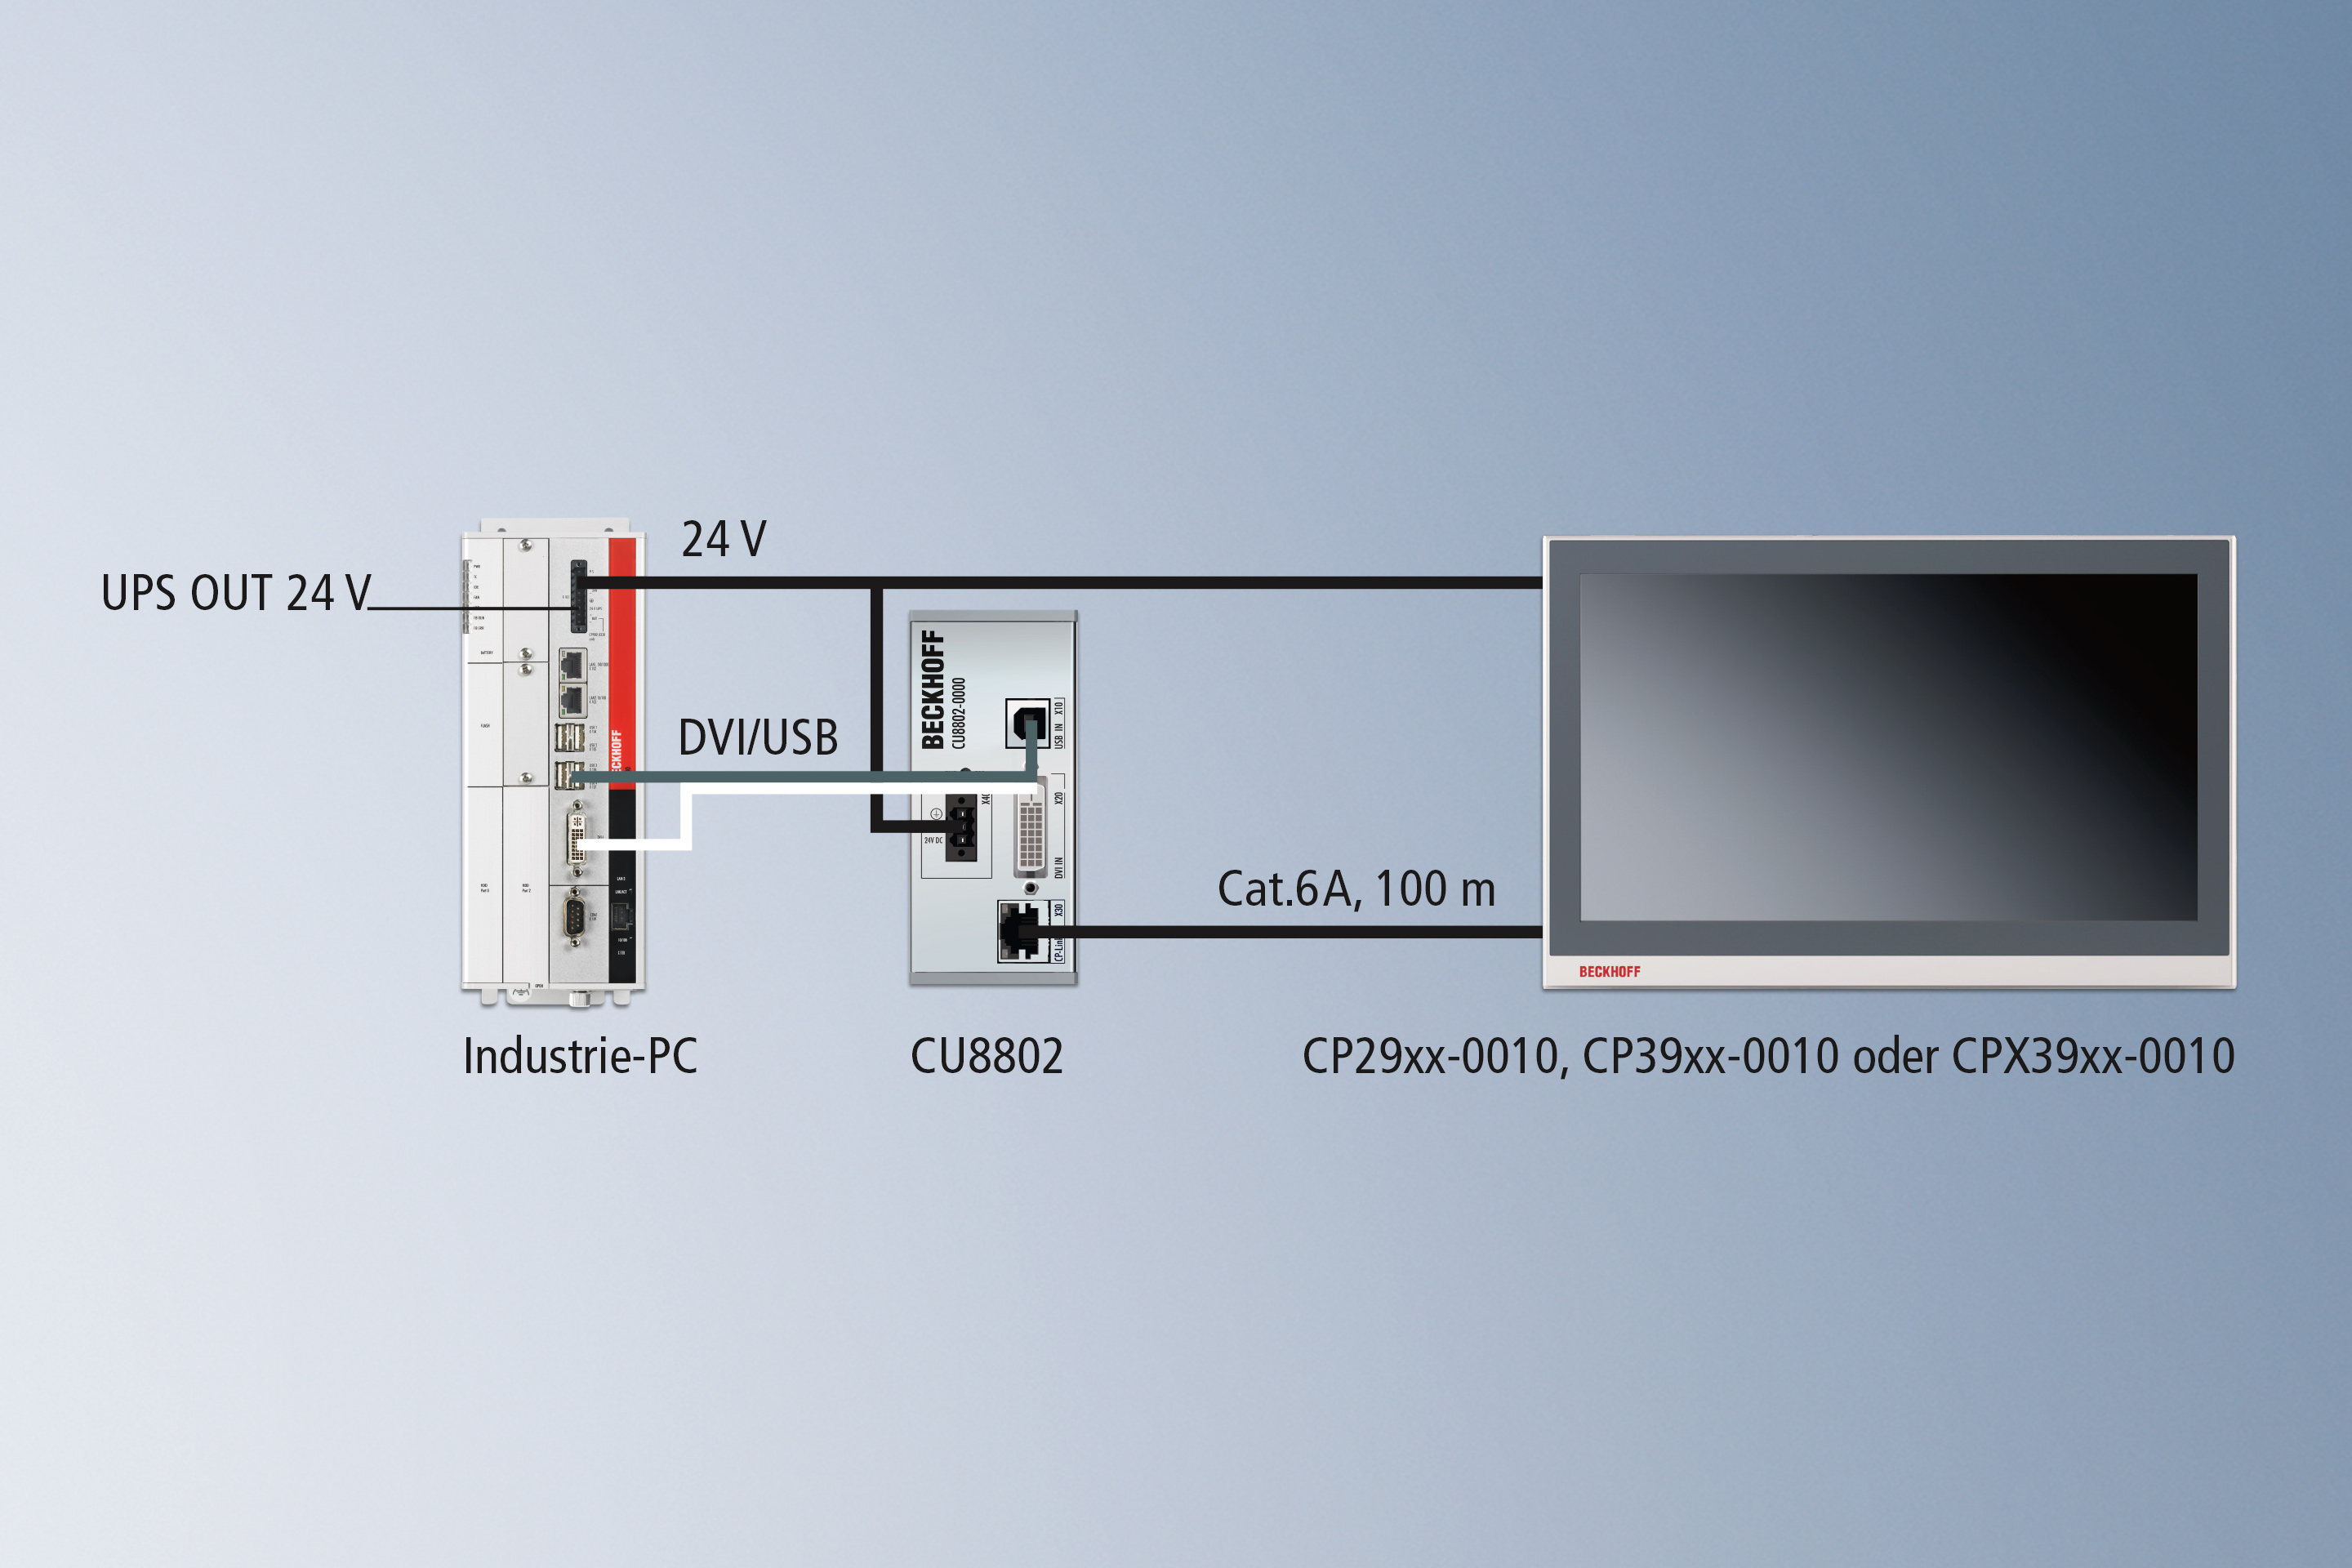 CP-Link 4 – The Two Cable Display Link: über die Senderbox CU8802 